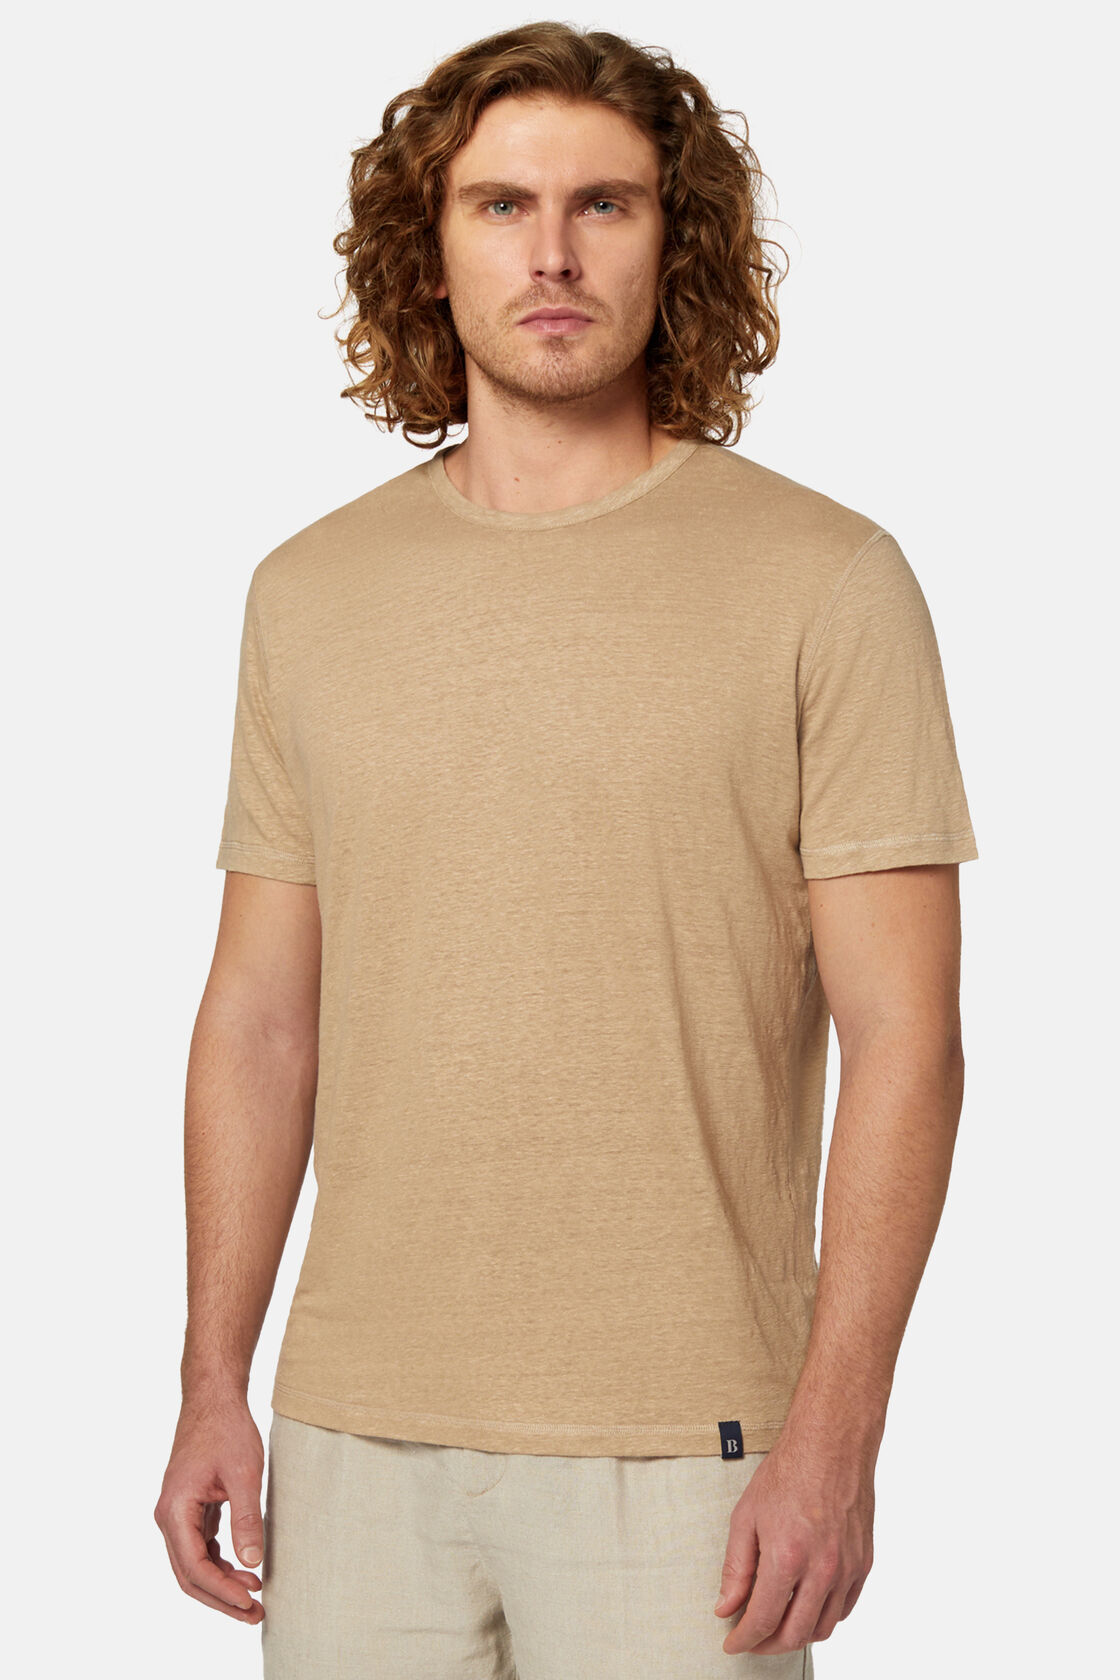 Κοντομάνικο μπλουζάκι από ελαστικό λινό ζέρσεϊ, Beige, hi-res